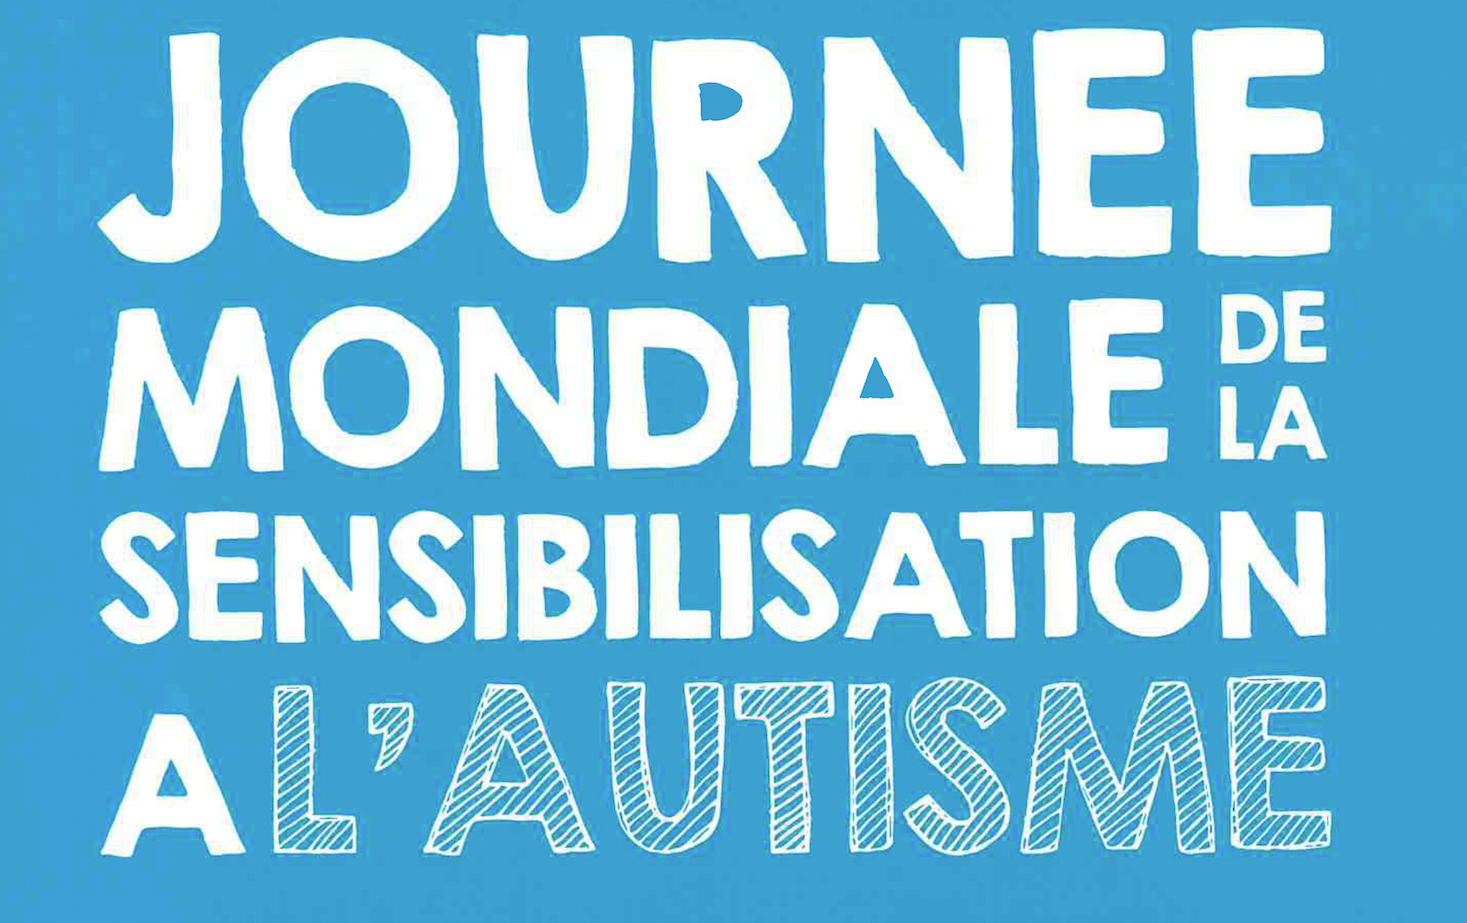 Journée mondiale de sensibilisation autisme - Calendovia